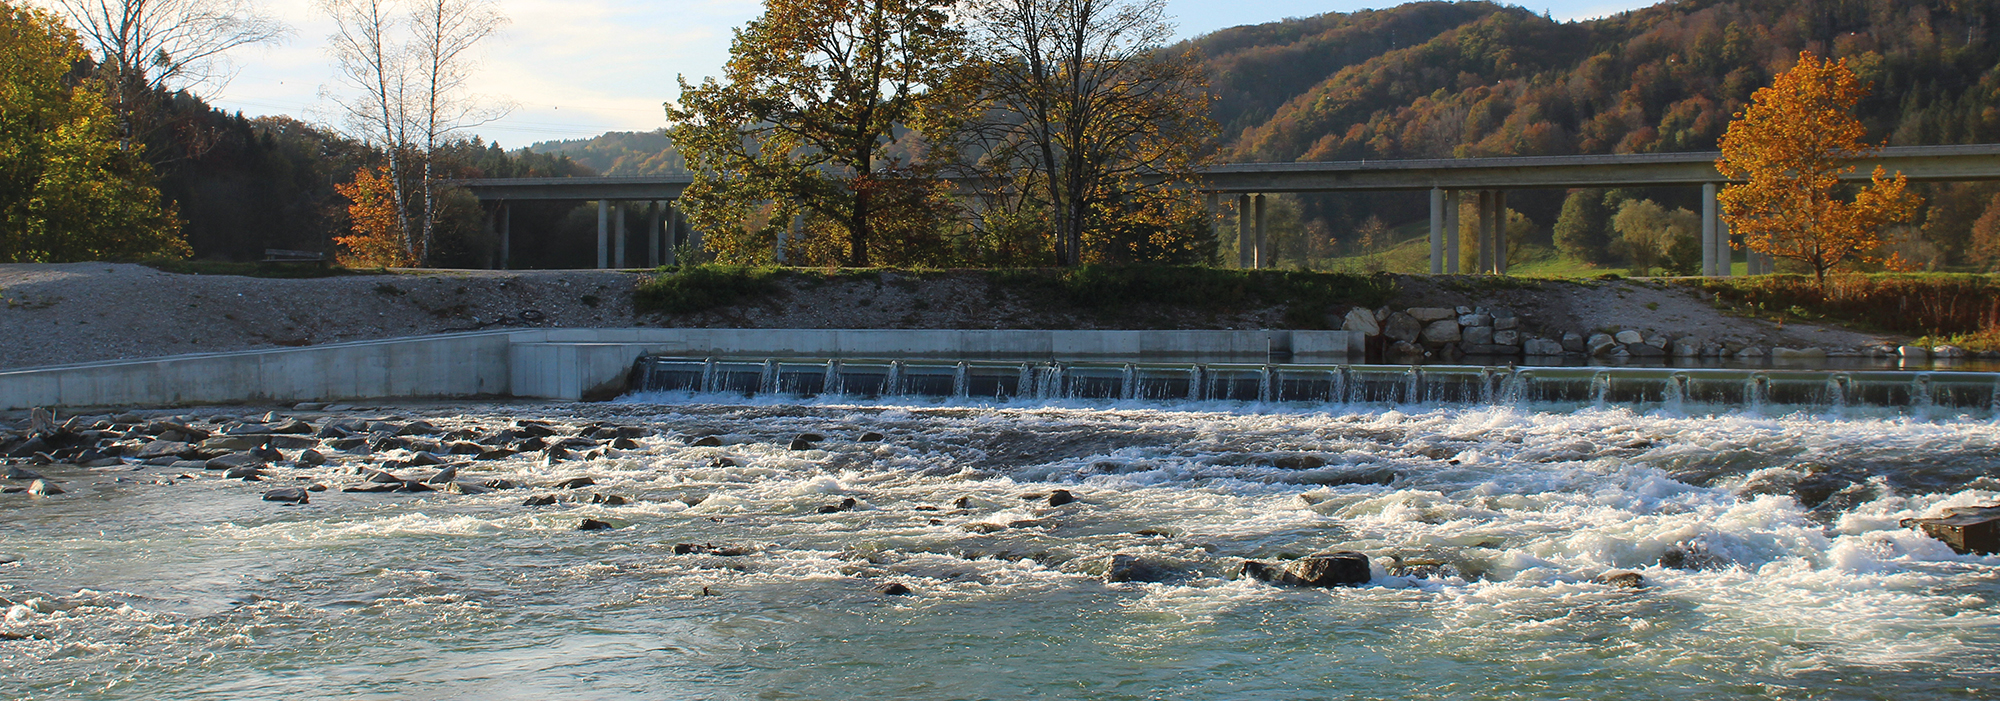 Soluciones hidroeléctricas para países emergentes y en desarrollo